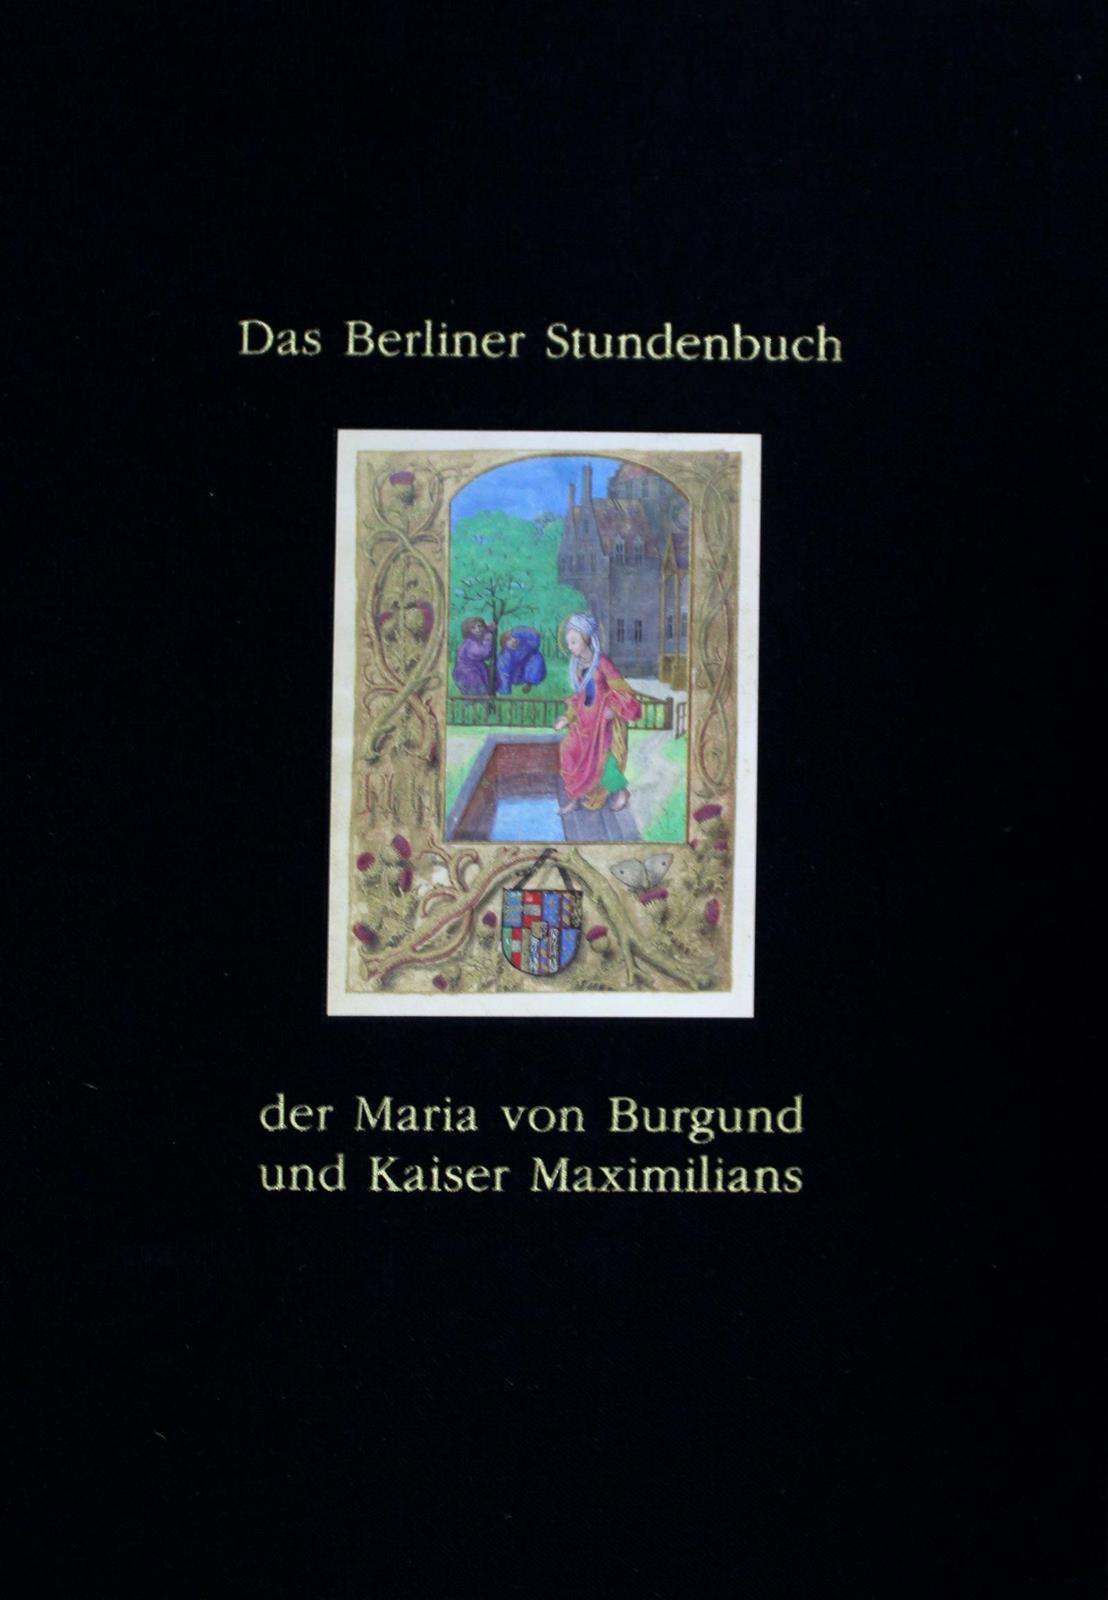 Berliner Stundenbuch, Das, | Bild Nr.1